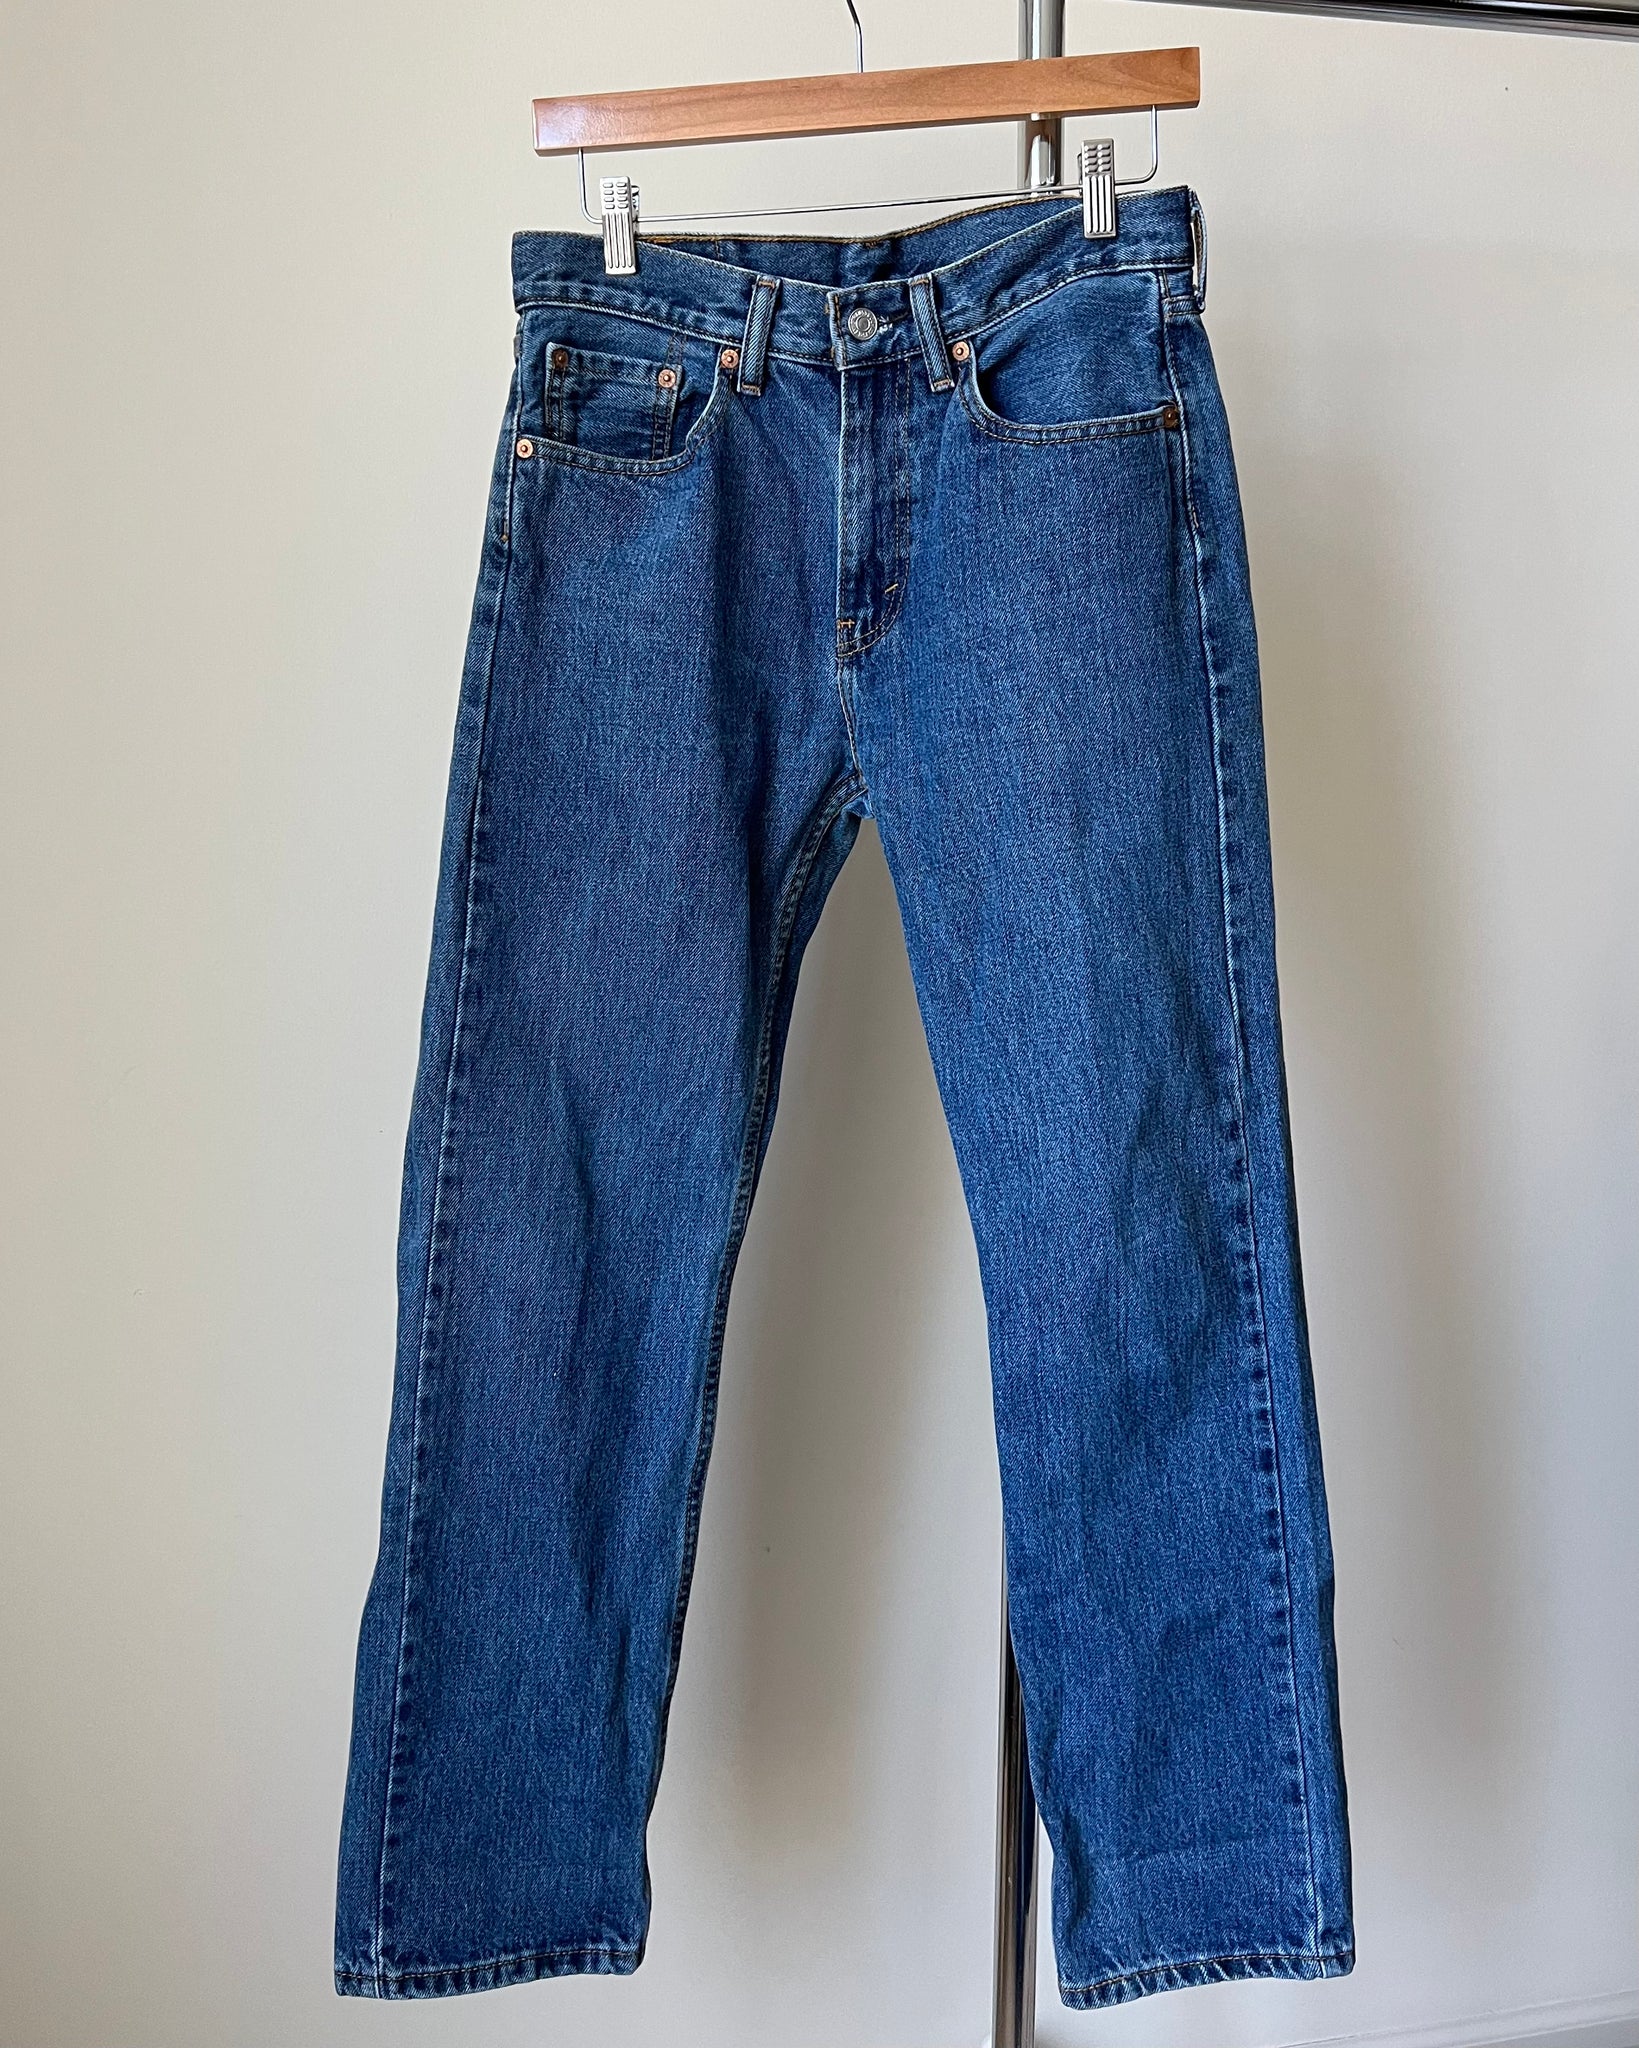 Levis 505 Mens Jeans (29” x 30”)